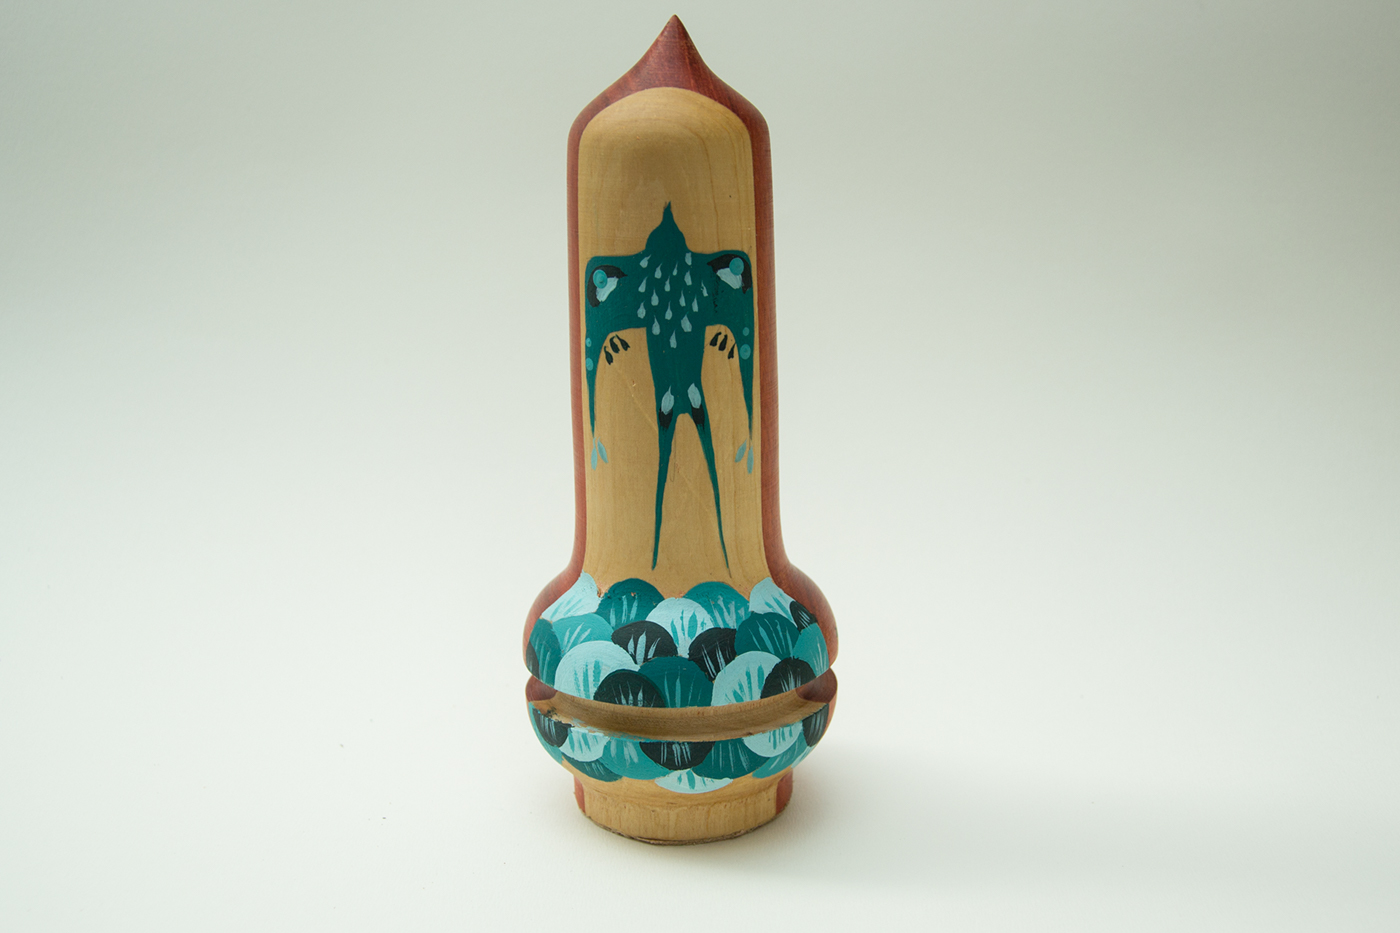 toy lathe wood woodturnig craft art FINEART sculpture woodwork Madeira